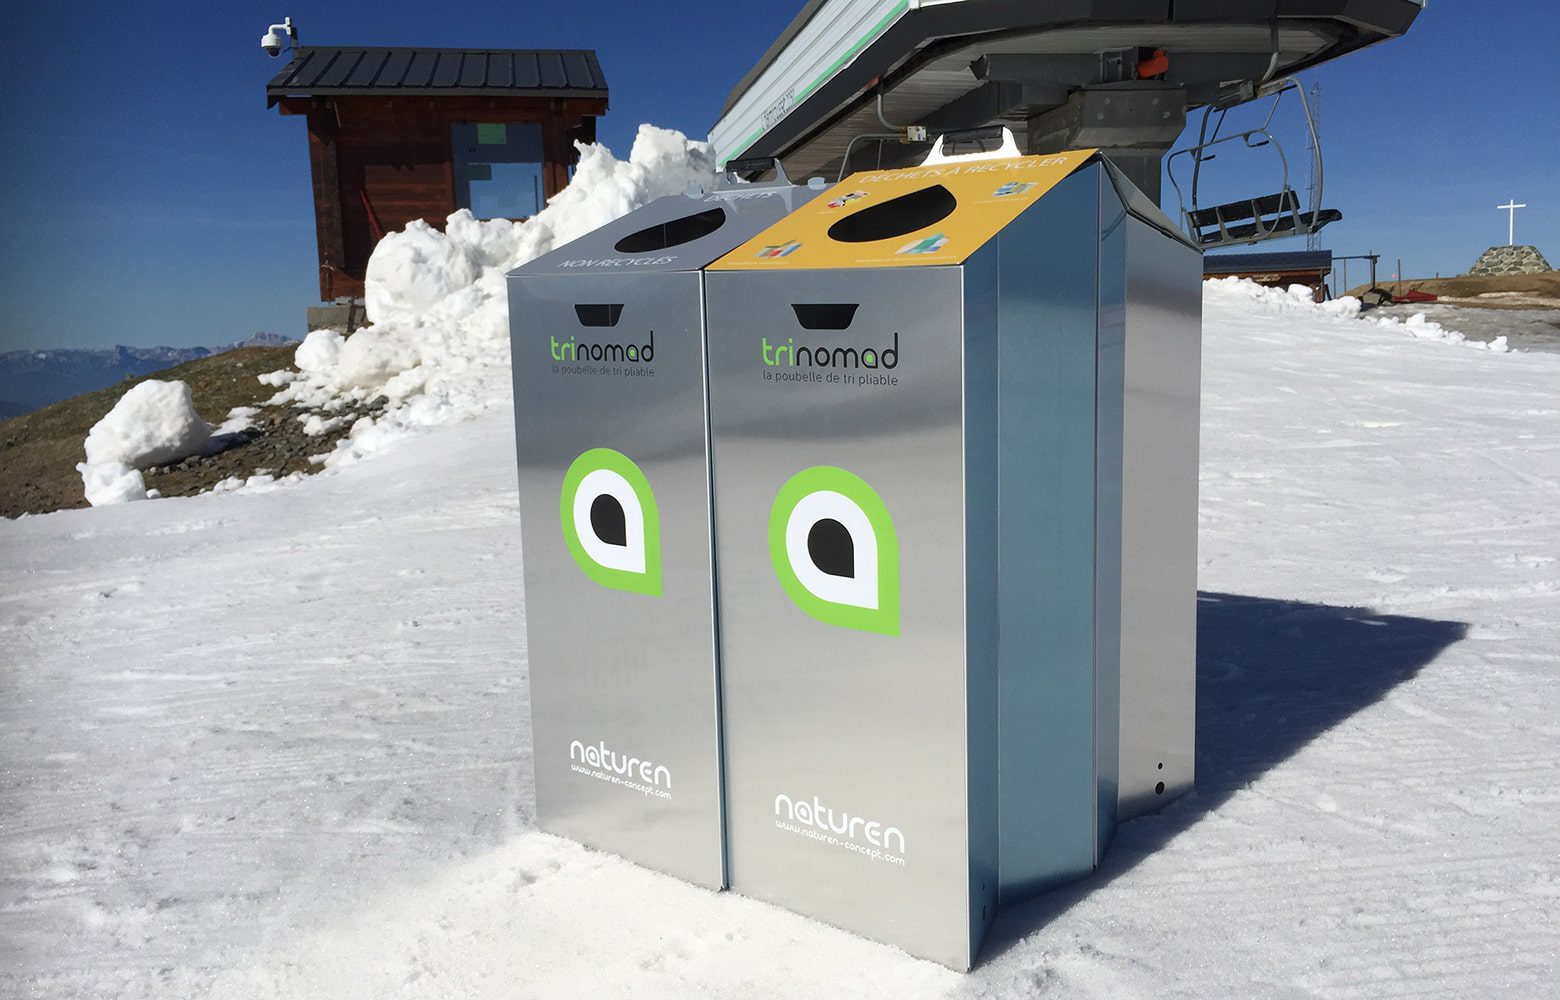 trinomad 2s poubelle de tri pliable installée en station de ski